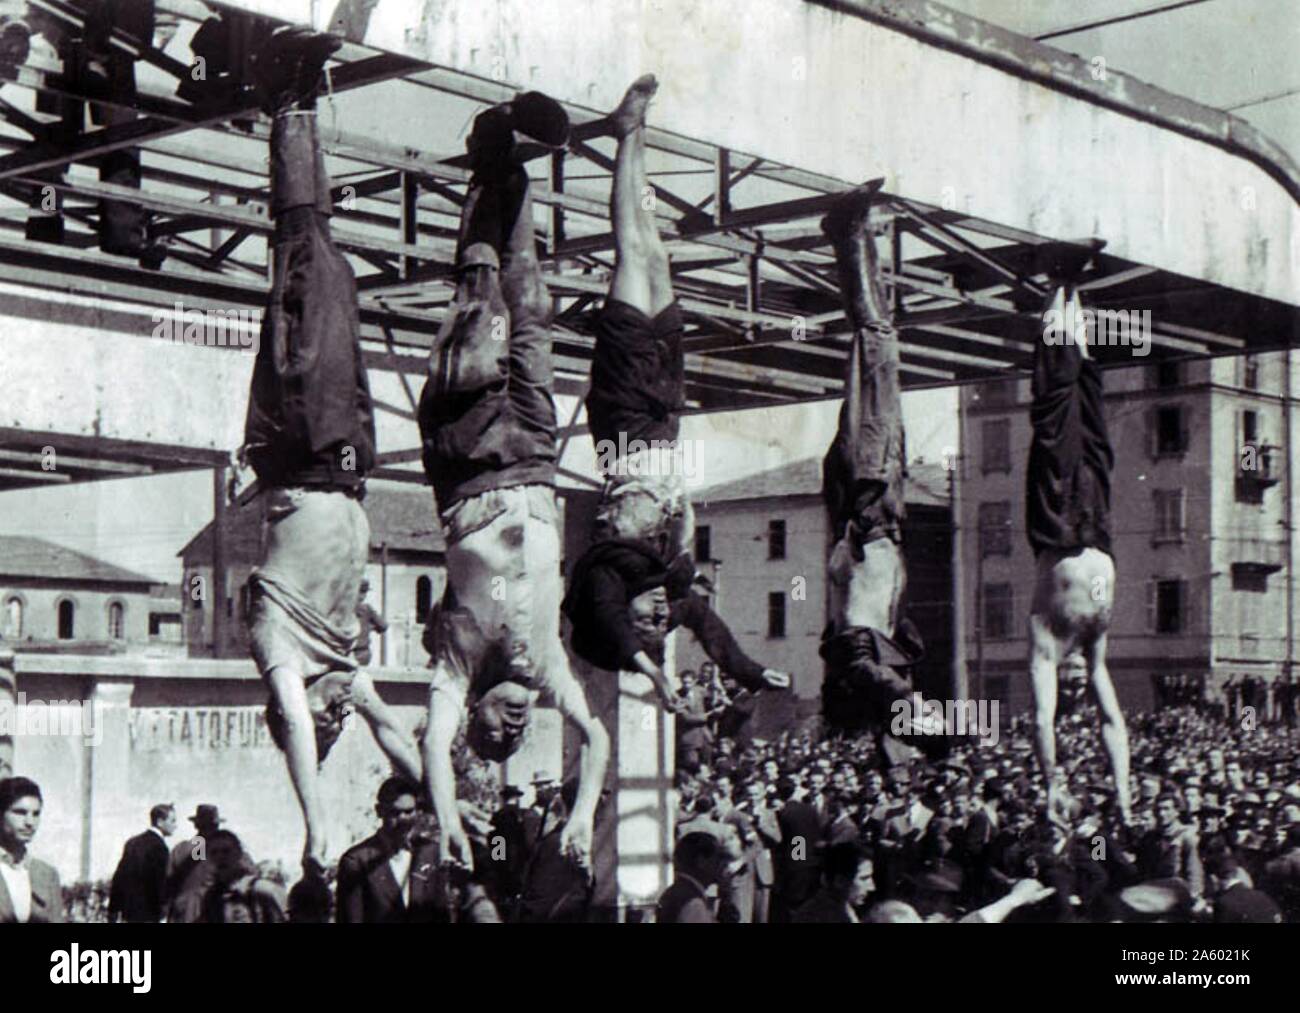 La morte di Benito Mussolini, Italiano dittatore fascista. Corpo di Mussolini (secondo da sinistra) accanto a Clara Petacci (centrale) e altri eseguiti fascisti, in Piazzale Loreto a Milano, Aprile 1945 Foto Stock